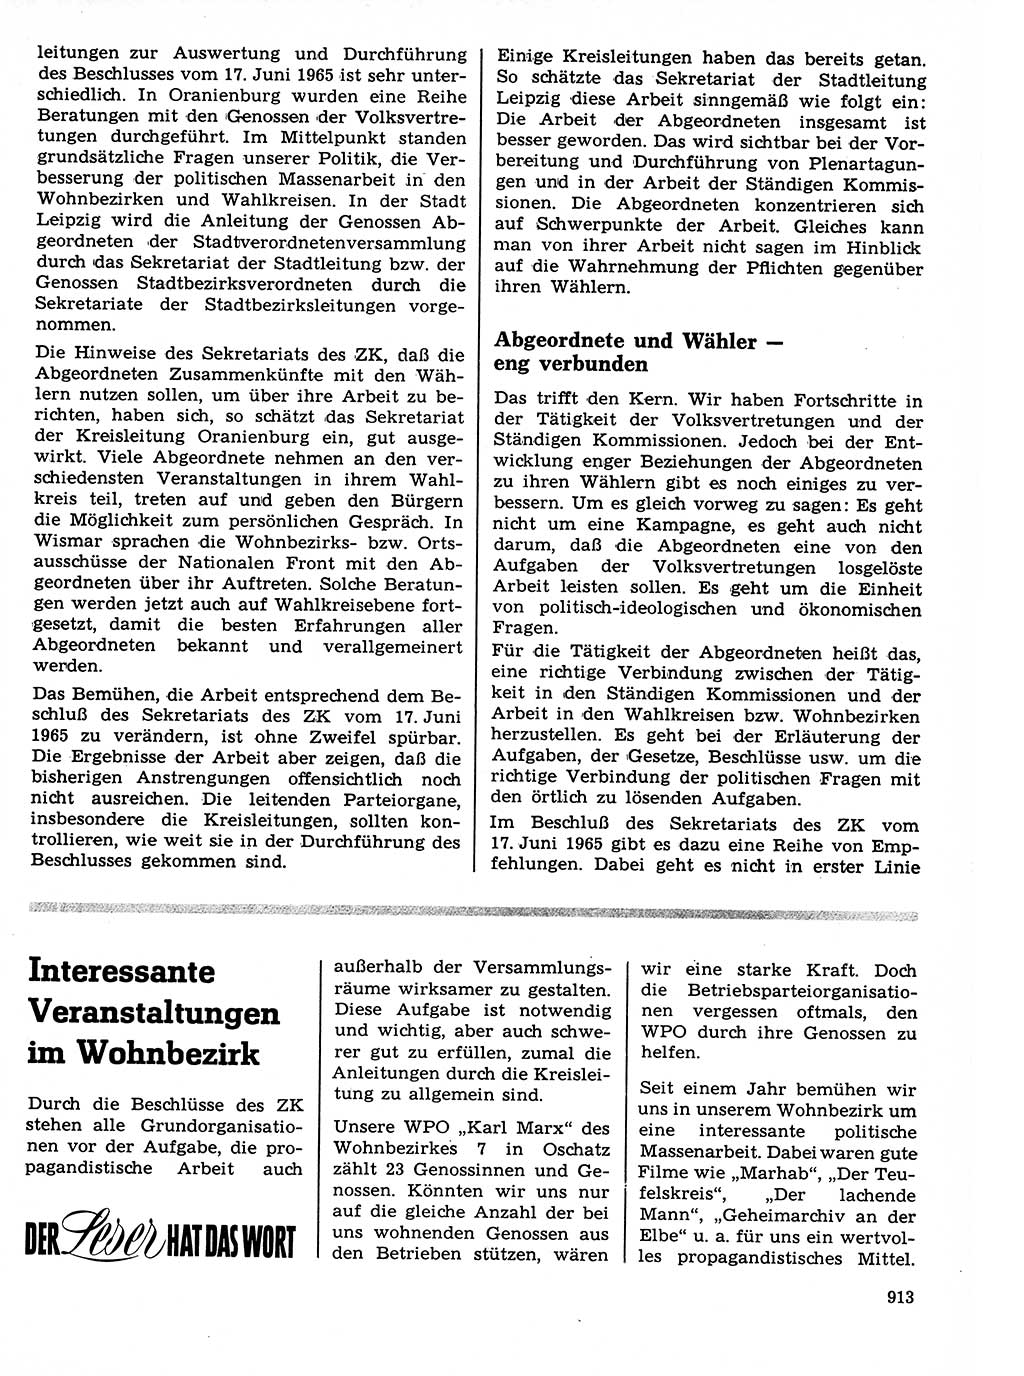 Neuer Weg (NW), Organ des Zentralkomitees (ZK) der SED (Sozialistische Einheitspartei Deutschlands) fÃ¼r Fragen des Parteilebens, 21. Jahrgang [Deutsche Demokratische Republik (DDR)] 1966, Seite 913 (NW ZK SED DDR 1966, S. 913)